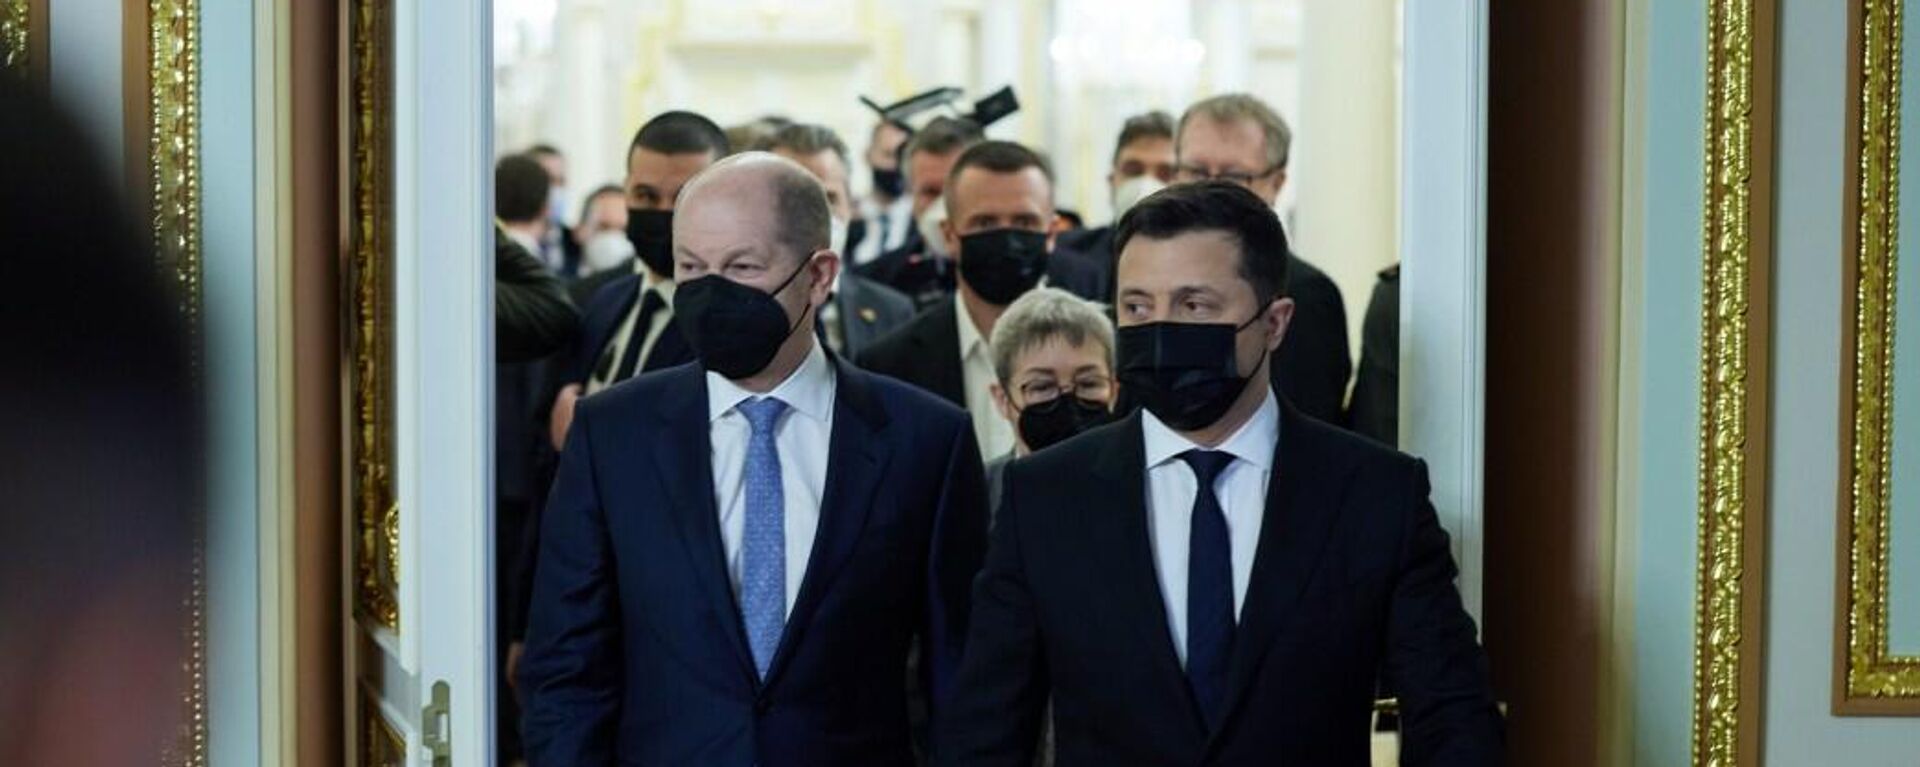 キーウ（キエフ）で会談するドイツのオラフ・ショルツ首相とウクライナのヴォロディミル・ゼレンスキー大統領 - Sputnik 日本, 1920, 31.05.2022